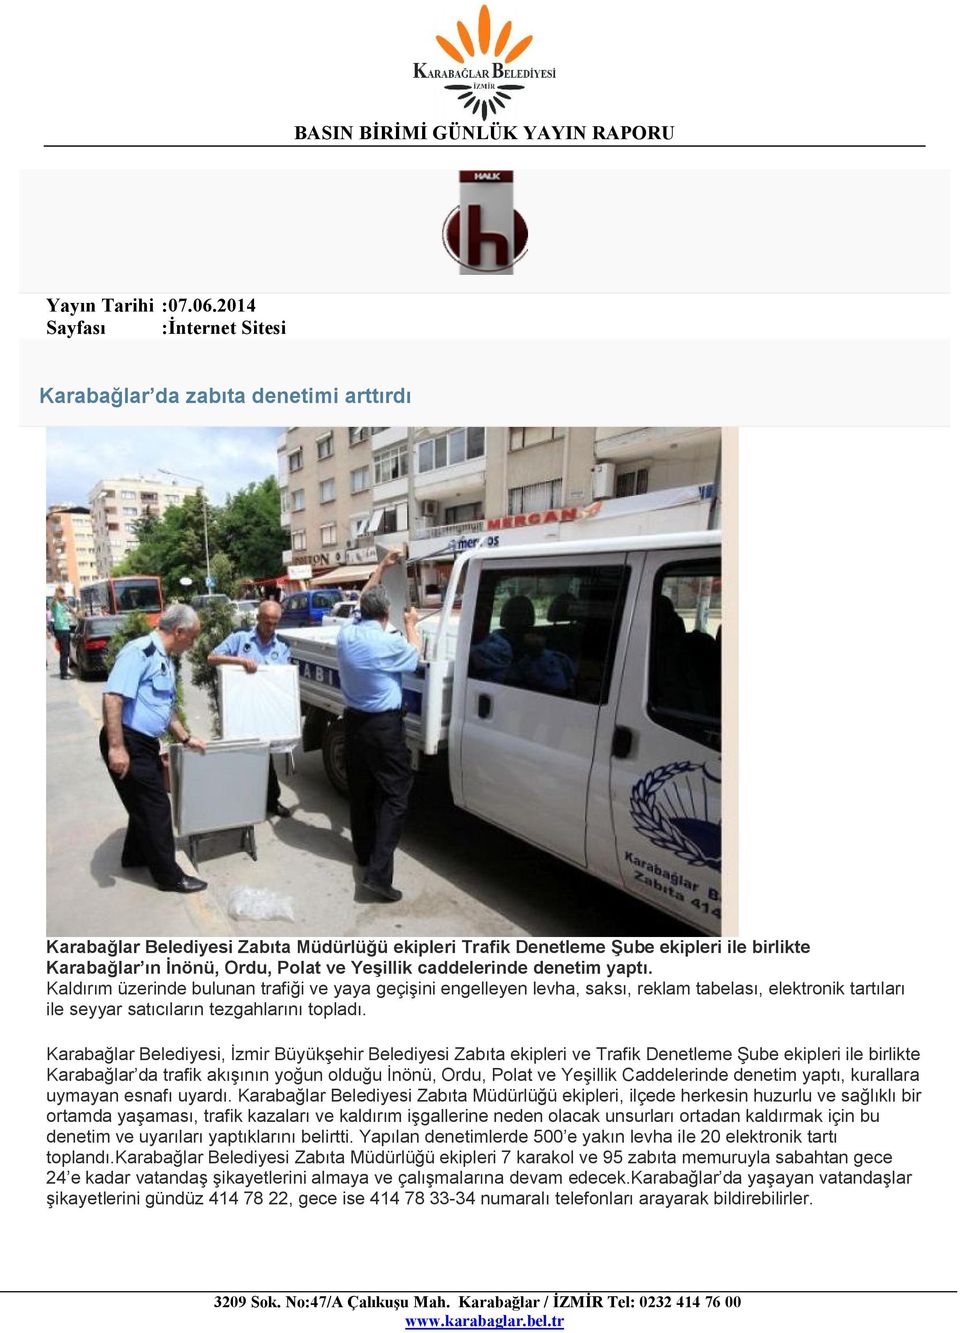 Karabağlar Belediyesi, İzmir Büyükşehir Belediyesi Zabıta ekipleri ve Trafik Denetleme Şube ekipleri ile birlikte Karabağlar da trafik akışının yoğun olduğu İnönü, Ordu, Polat ve Yeşillik